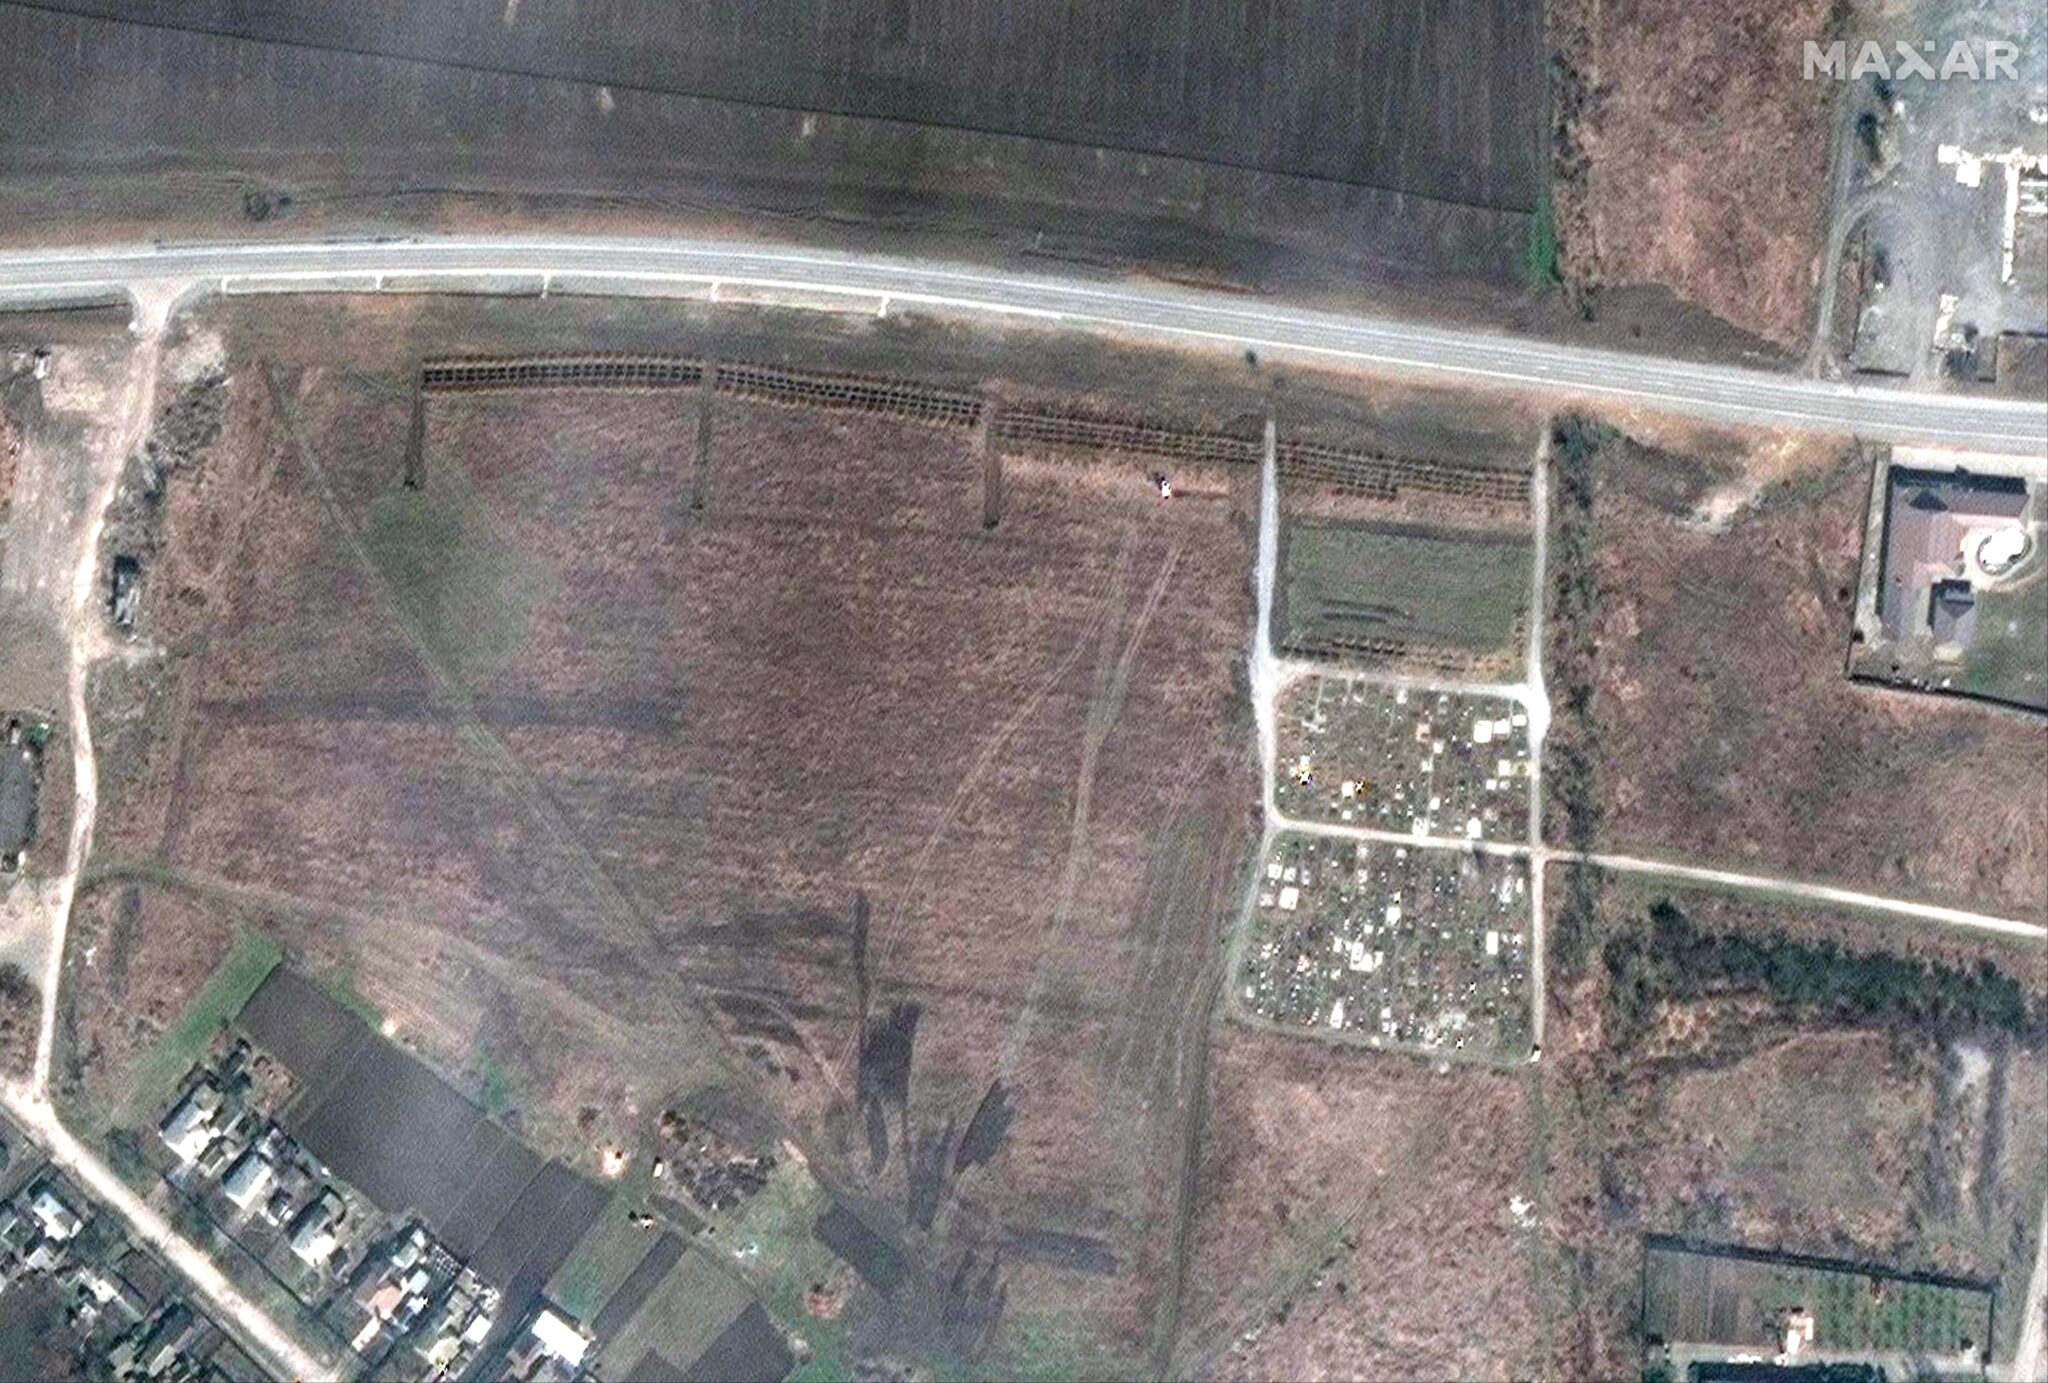 Imágenes de satélite tomadas por la empresa tecnológica Maxar que muestran la fosa común